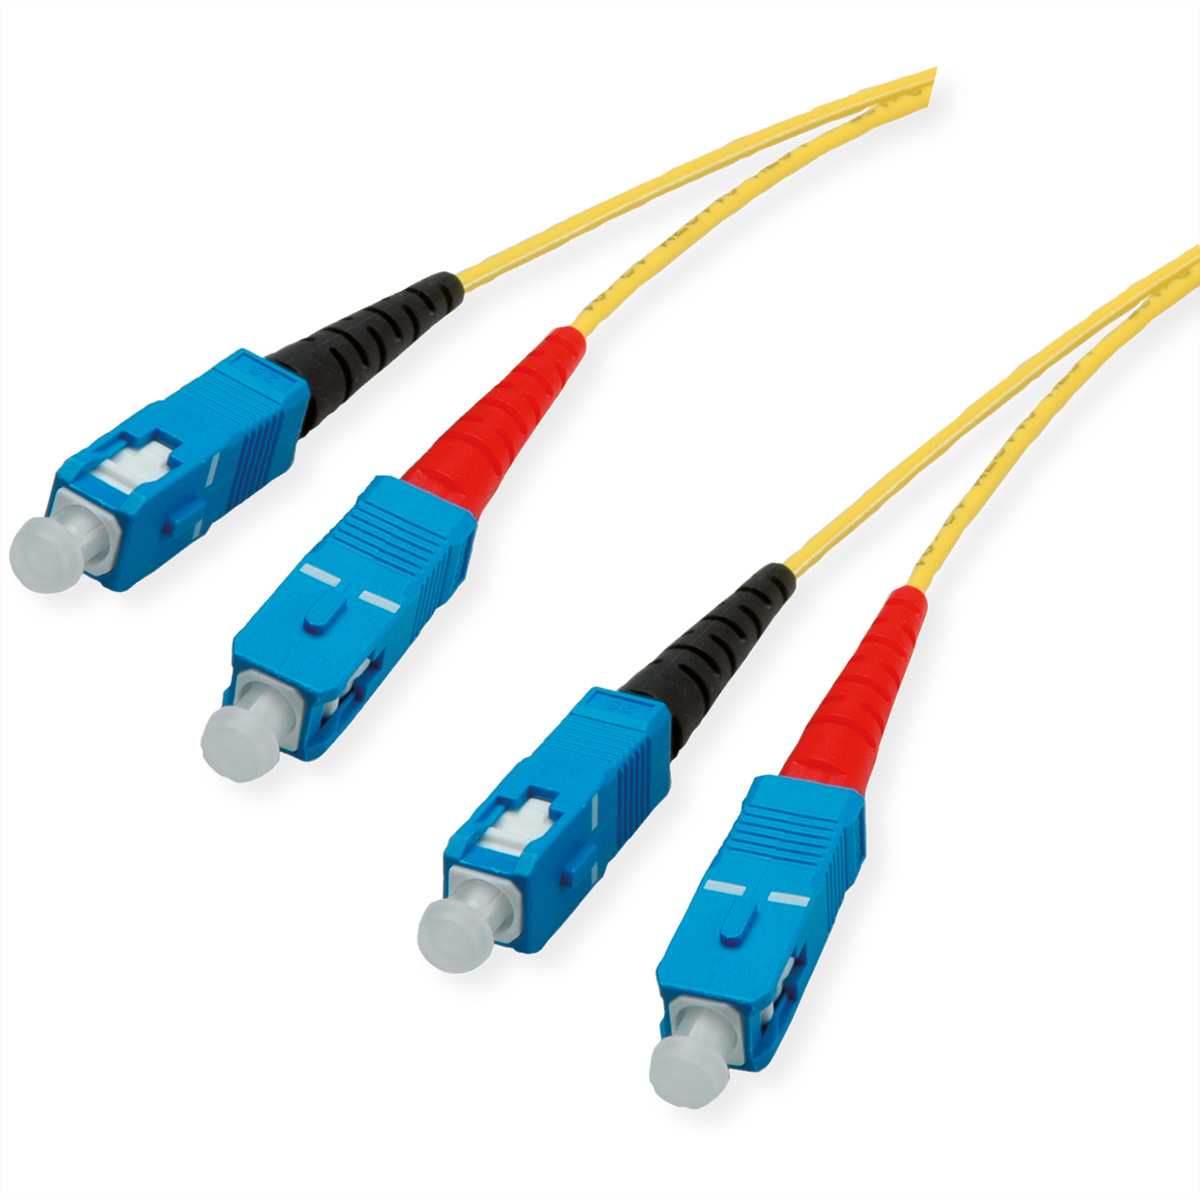 Quality LWL-Kabel Single Mode E9/125µm OS2, SC/SC, gelb, 1 m